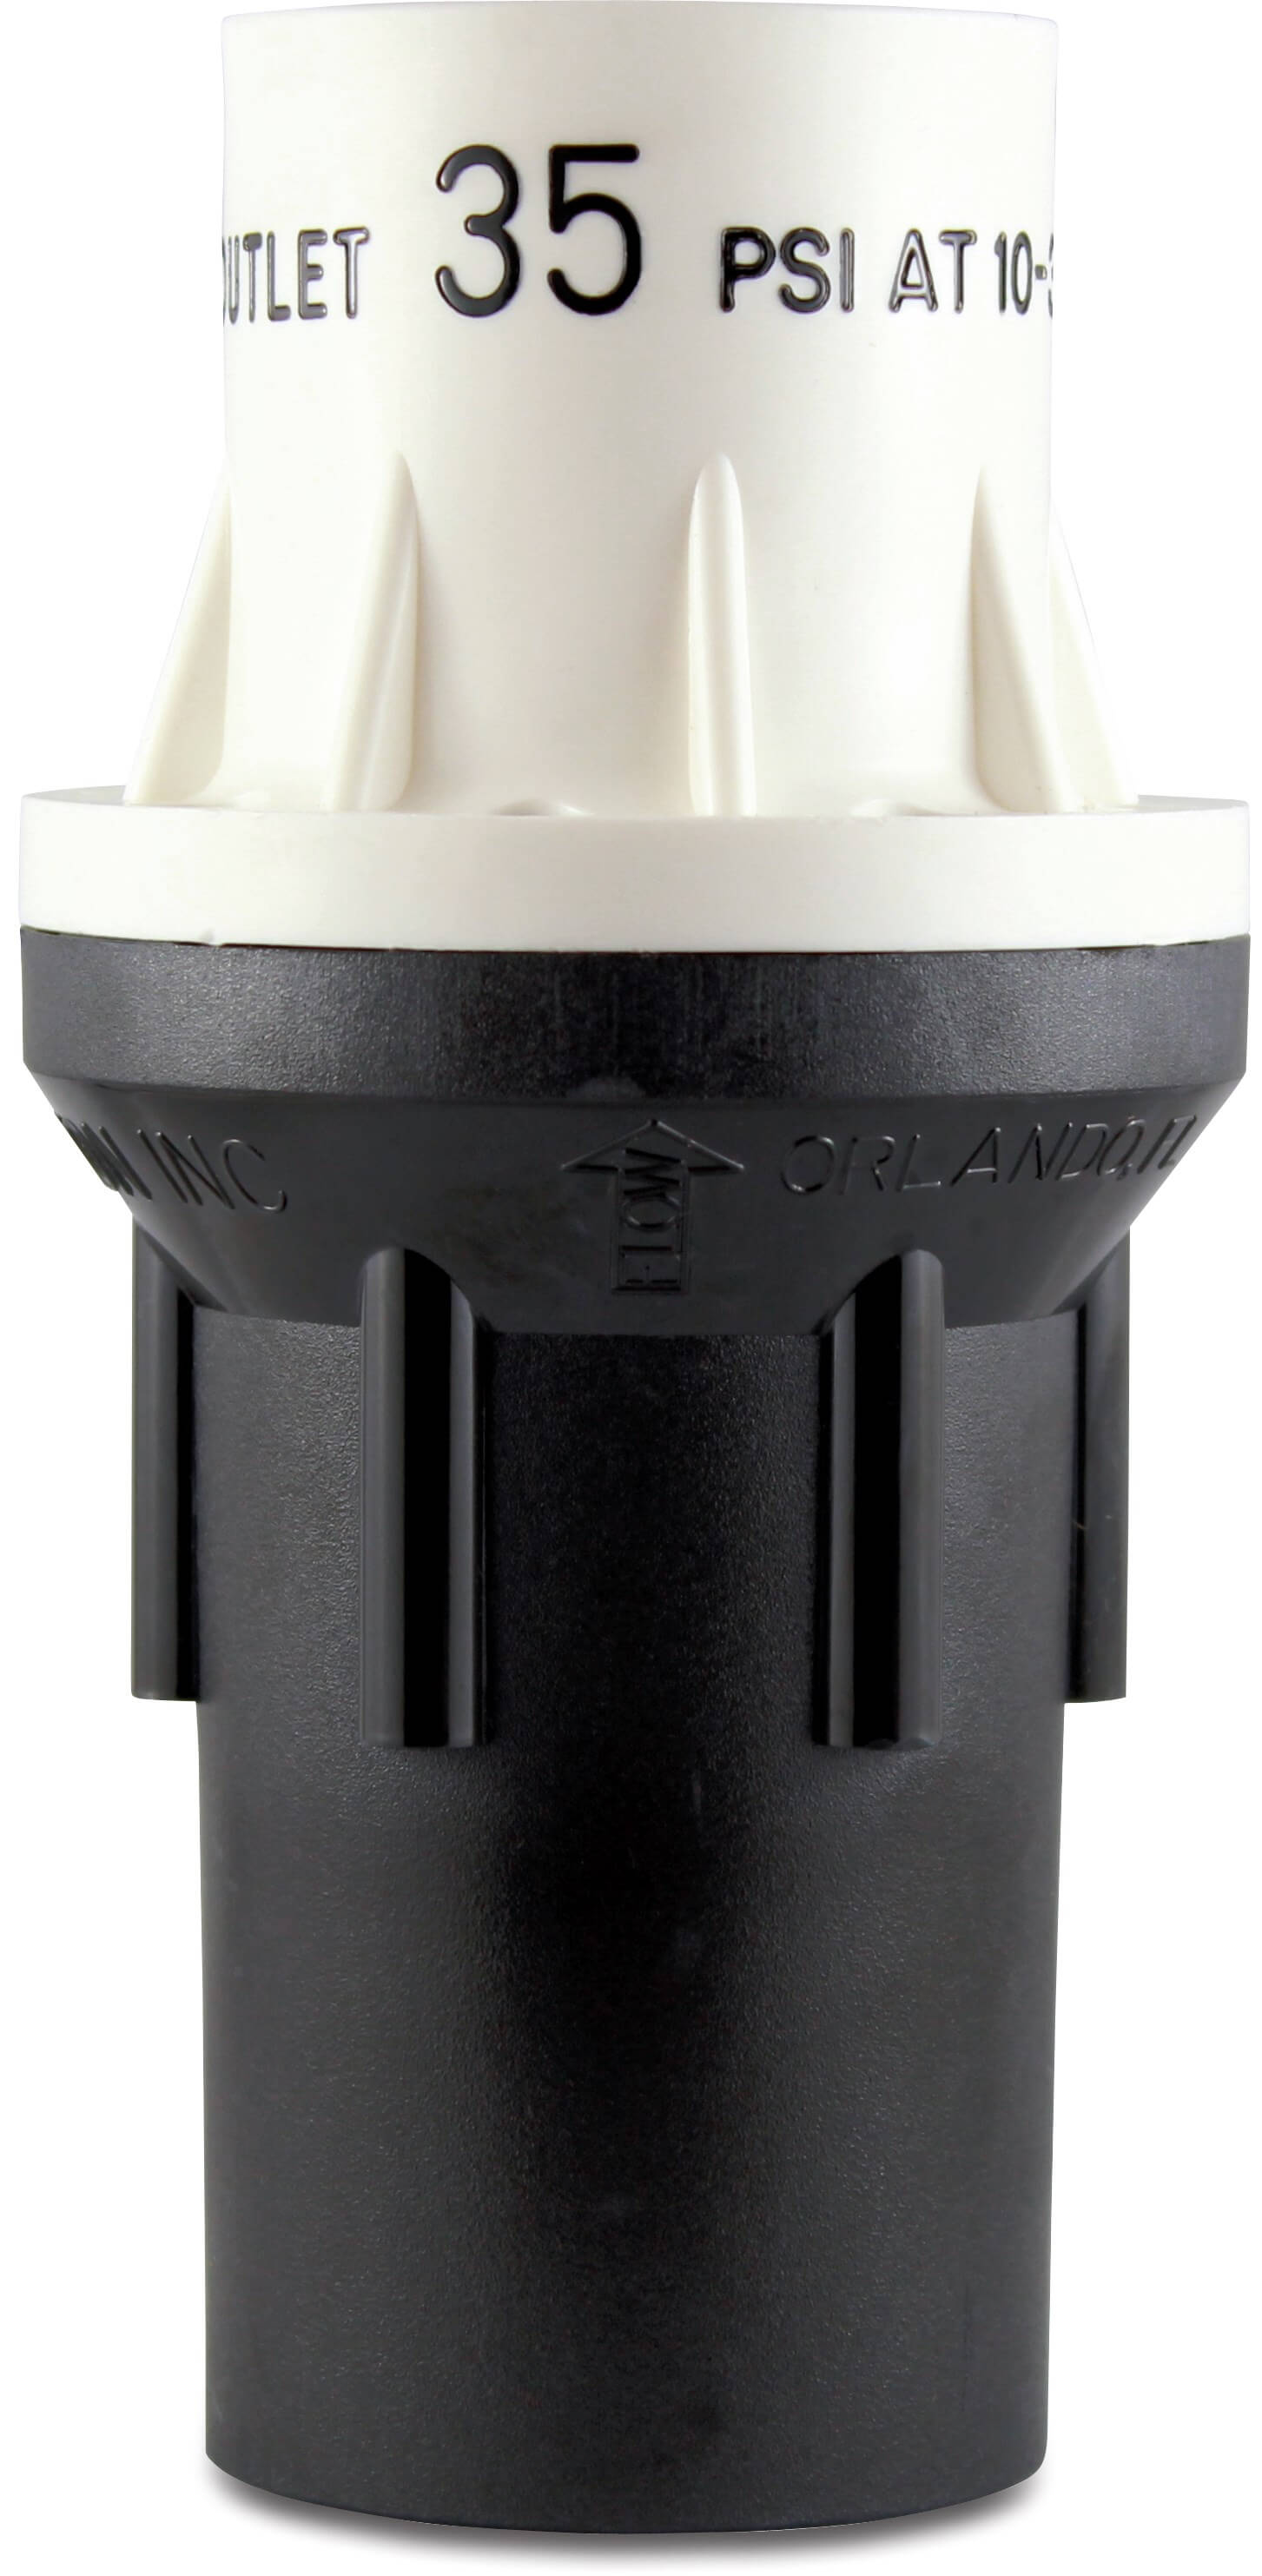 Senninger Drukreduceerventiel kunststof 1 1/4" binnendraad zwart/wit type PR-HF-15